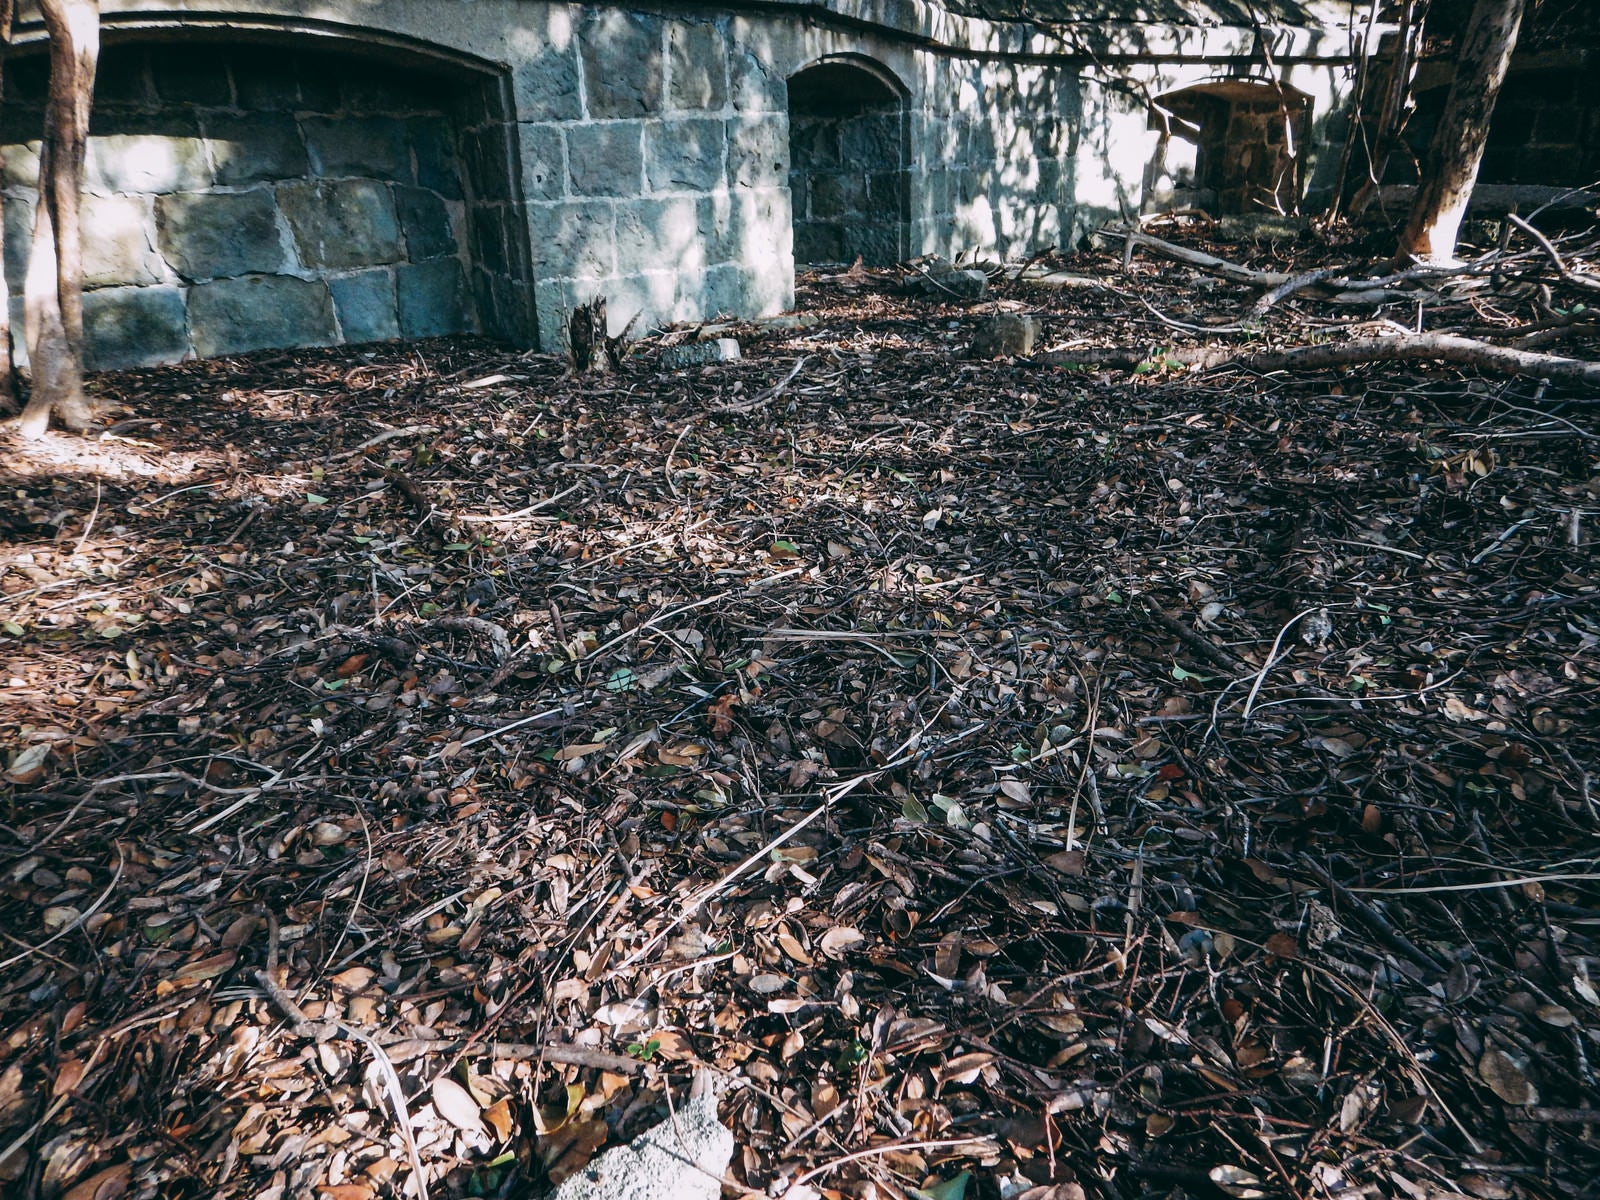 「踏み放題の落ち葉と廃建物」の写真